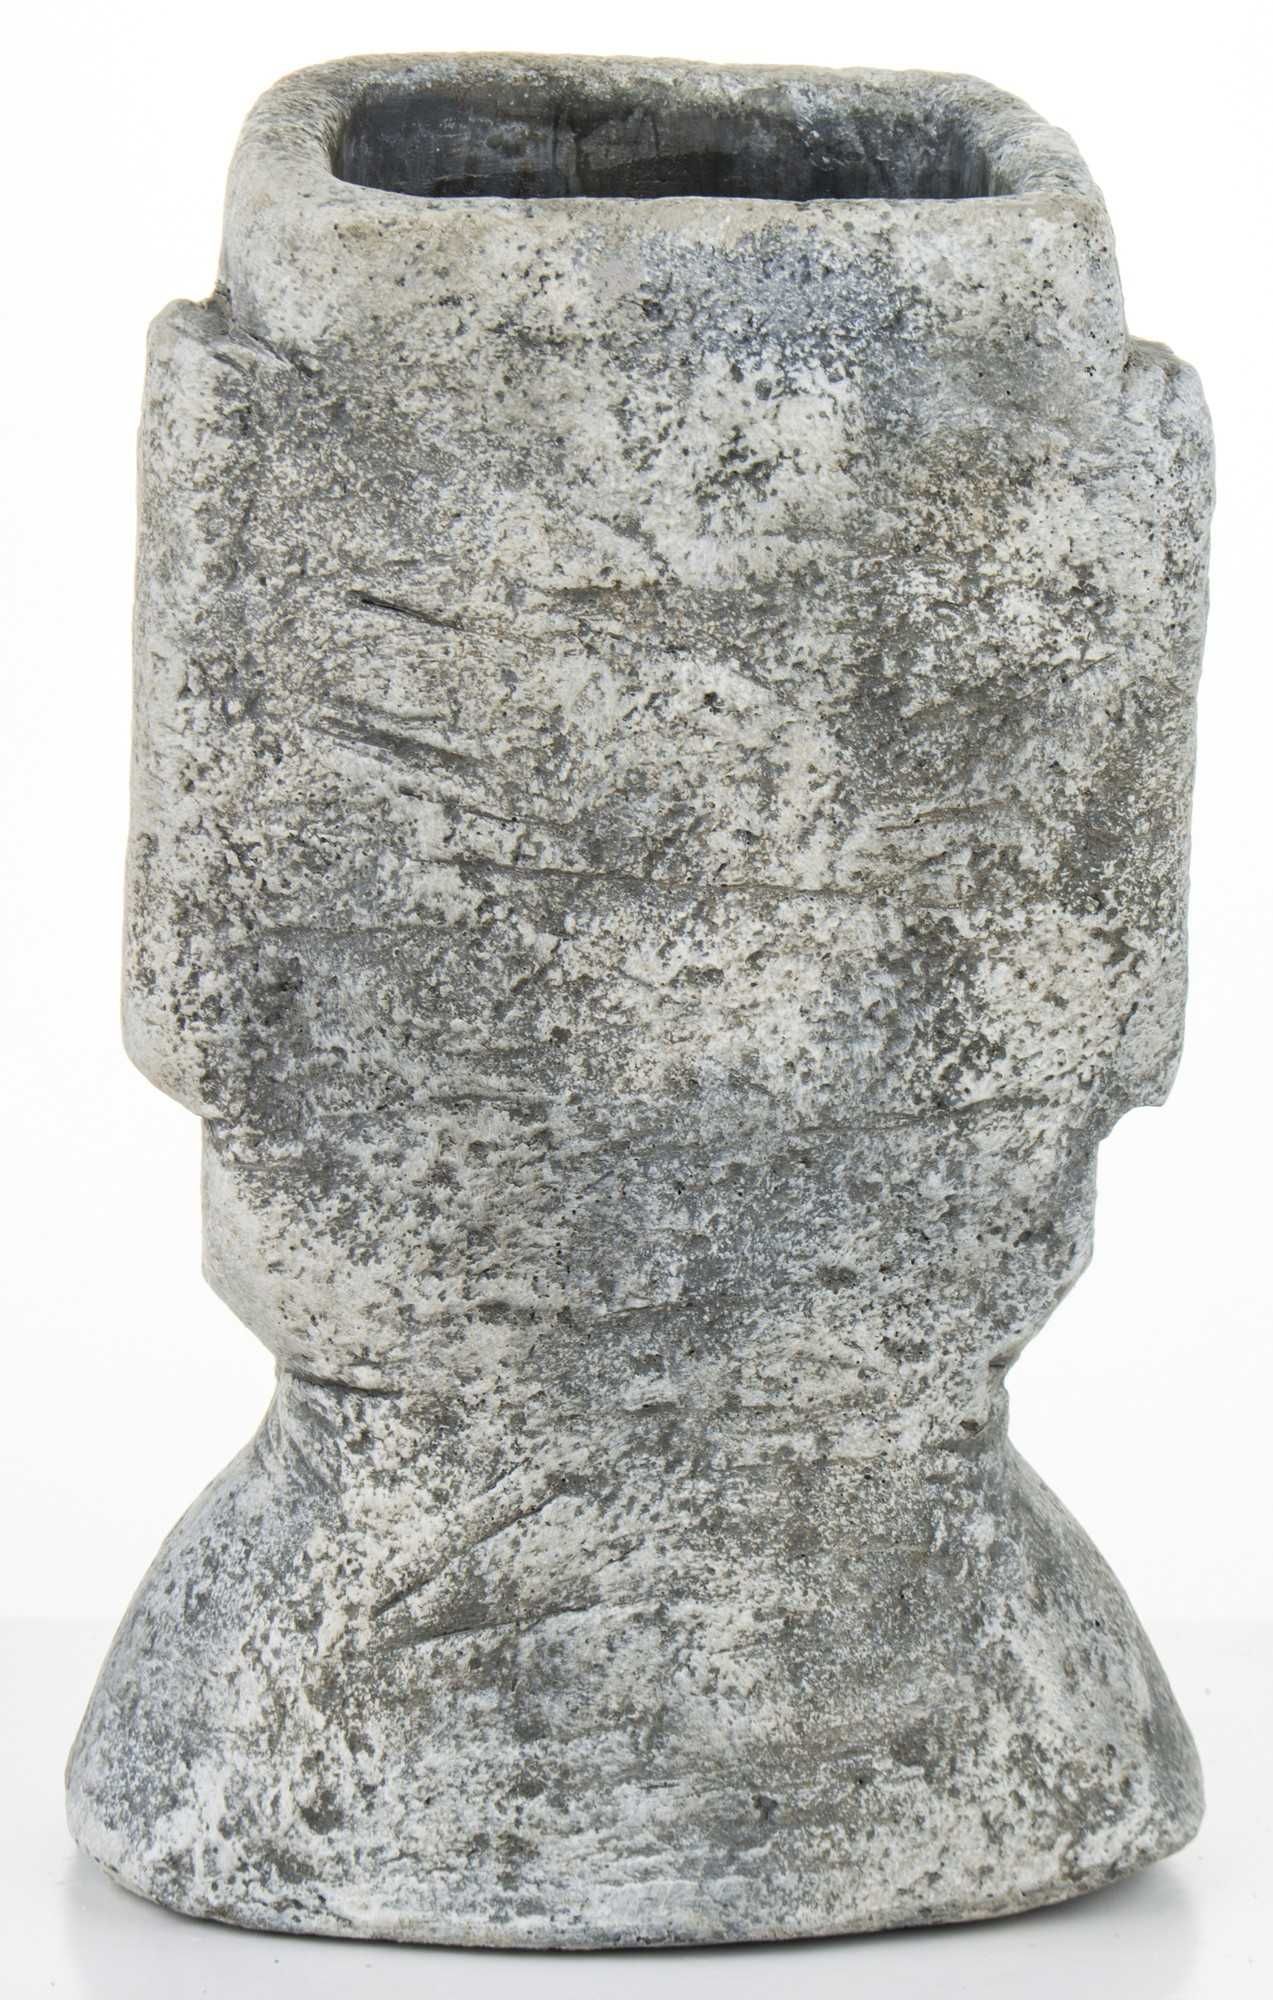 Osłonka betonowa moai 28 x 18 x 16 cm szara wazon